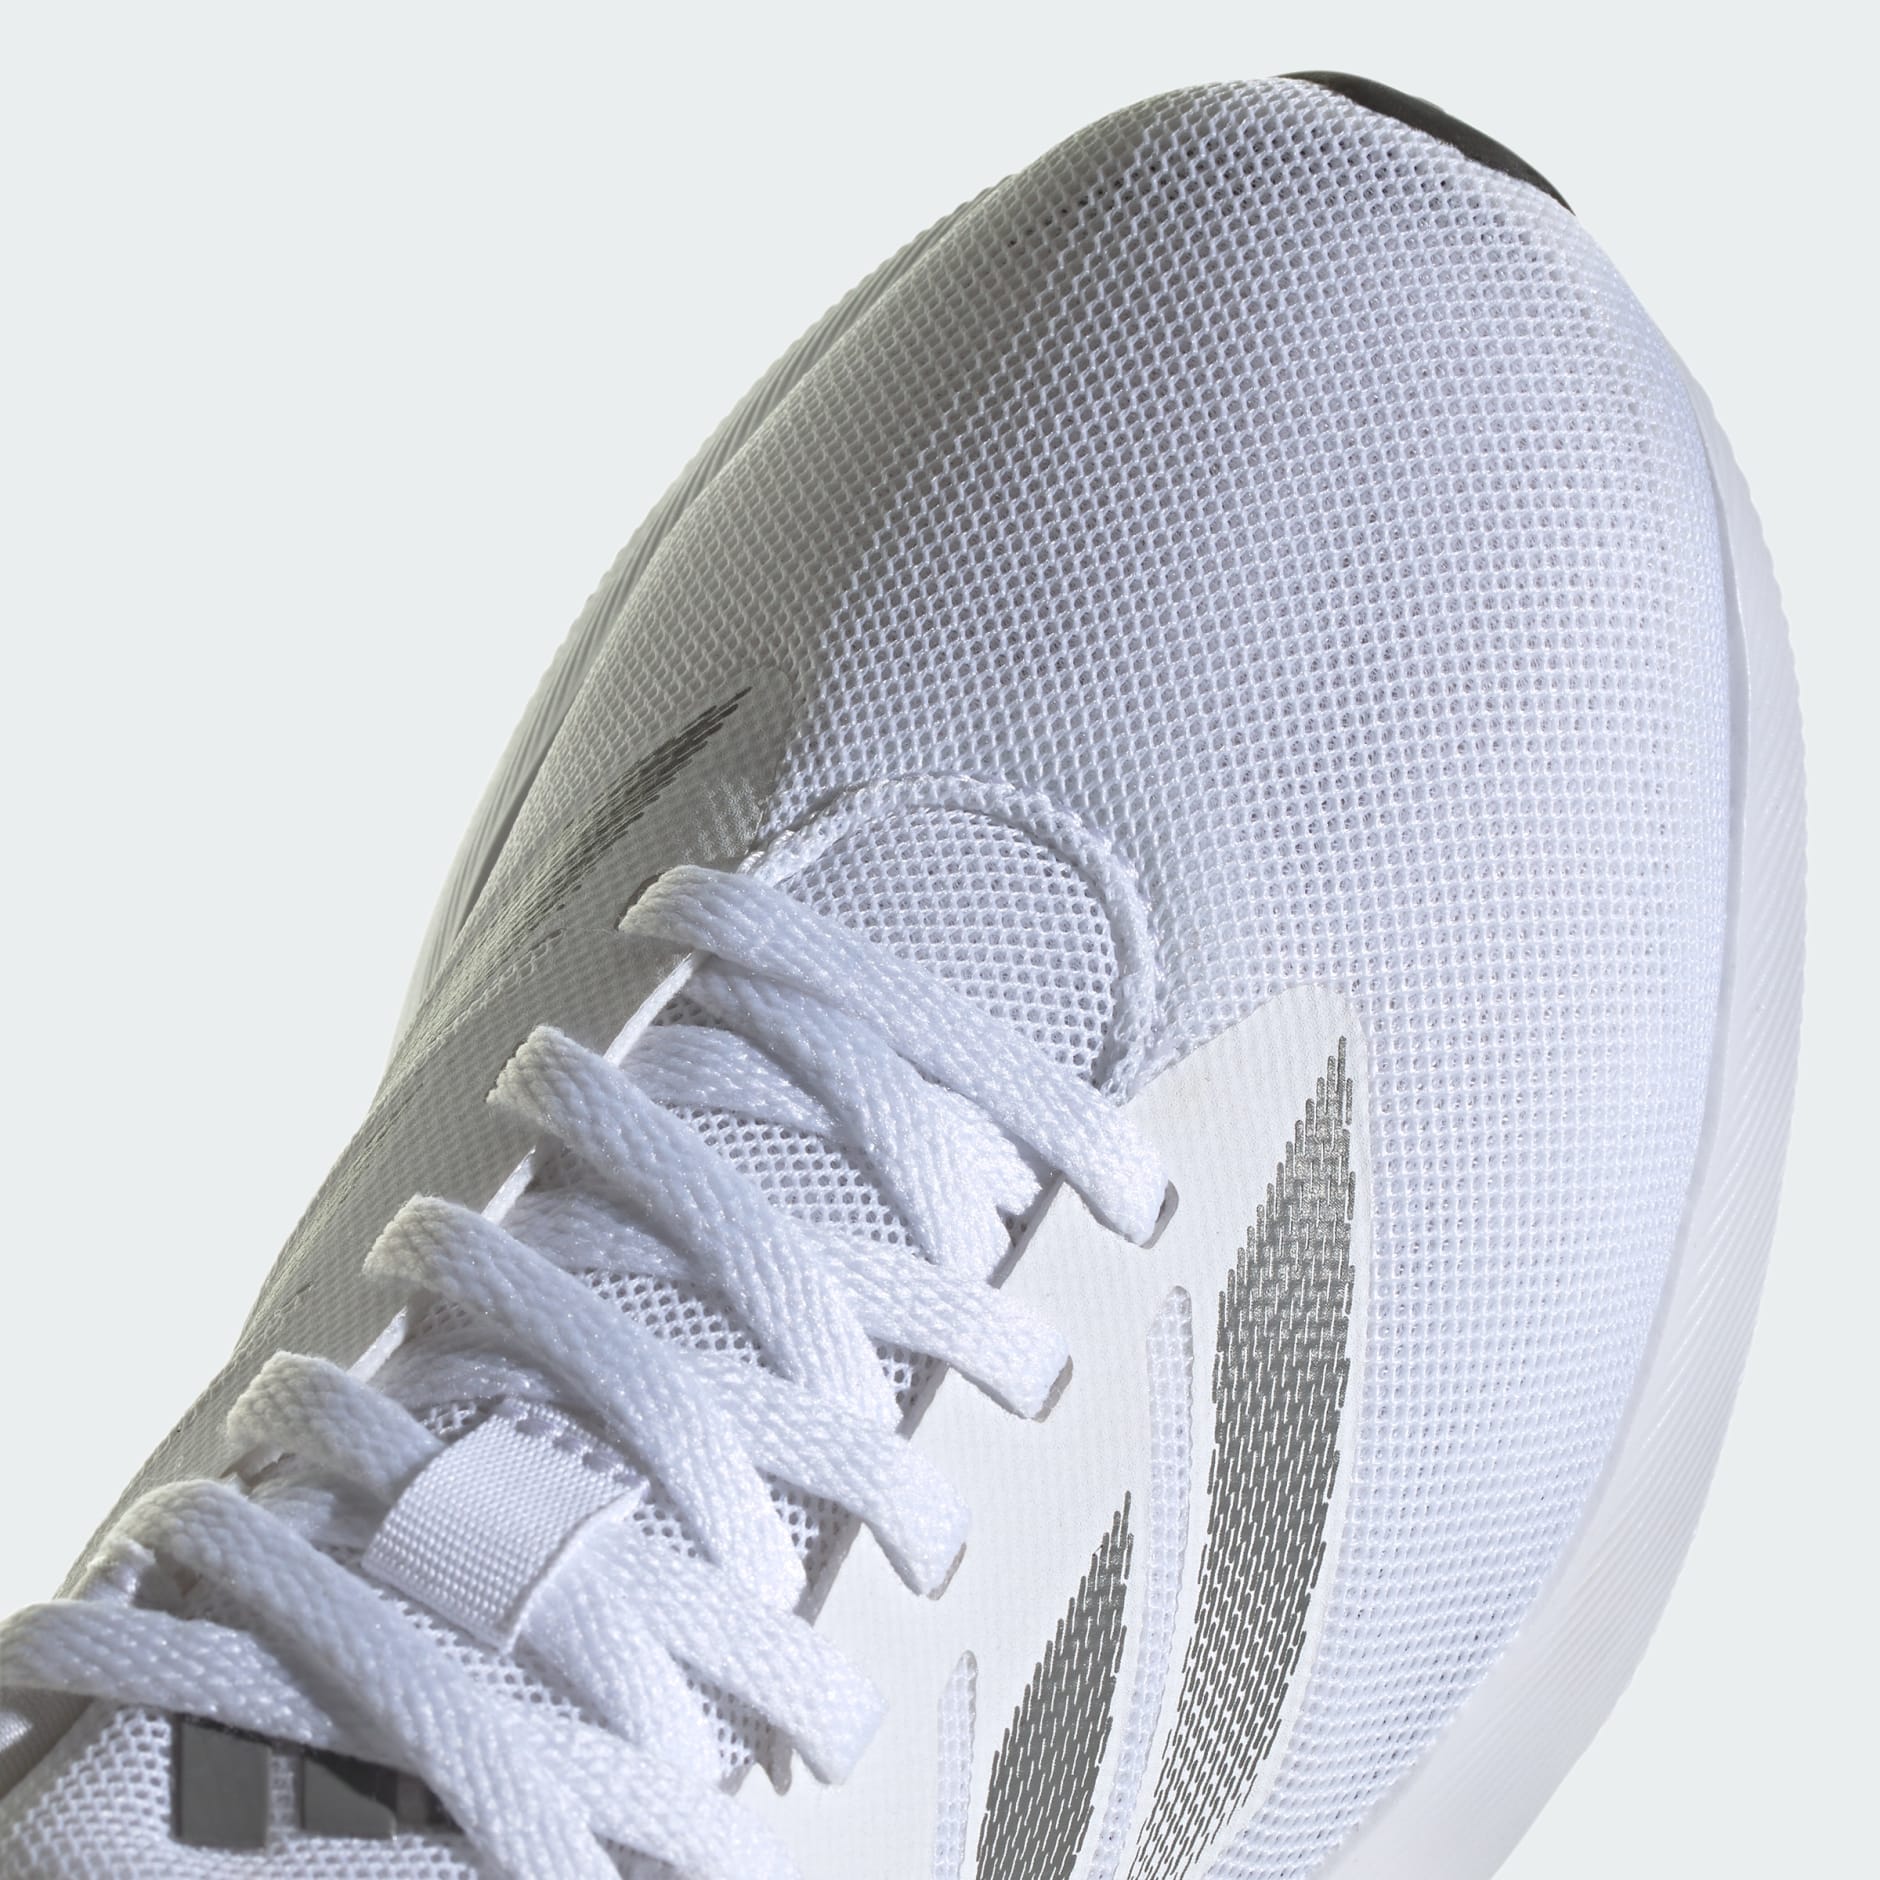 adidas Duramo RC Shoes - White | adidas UAE